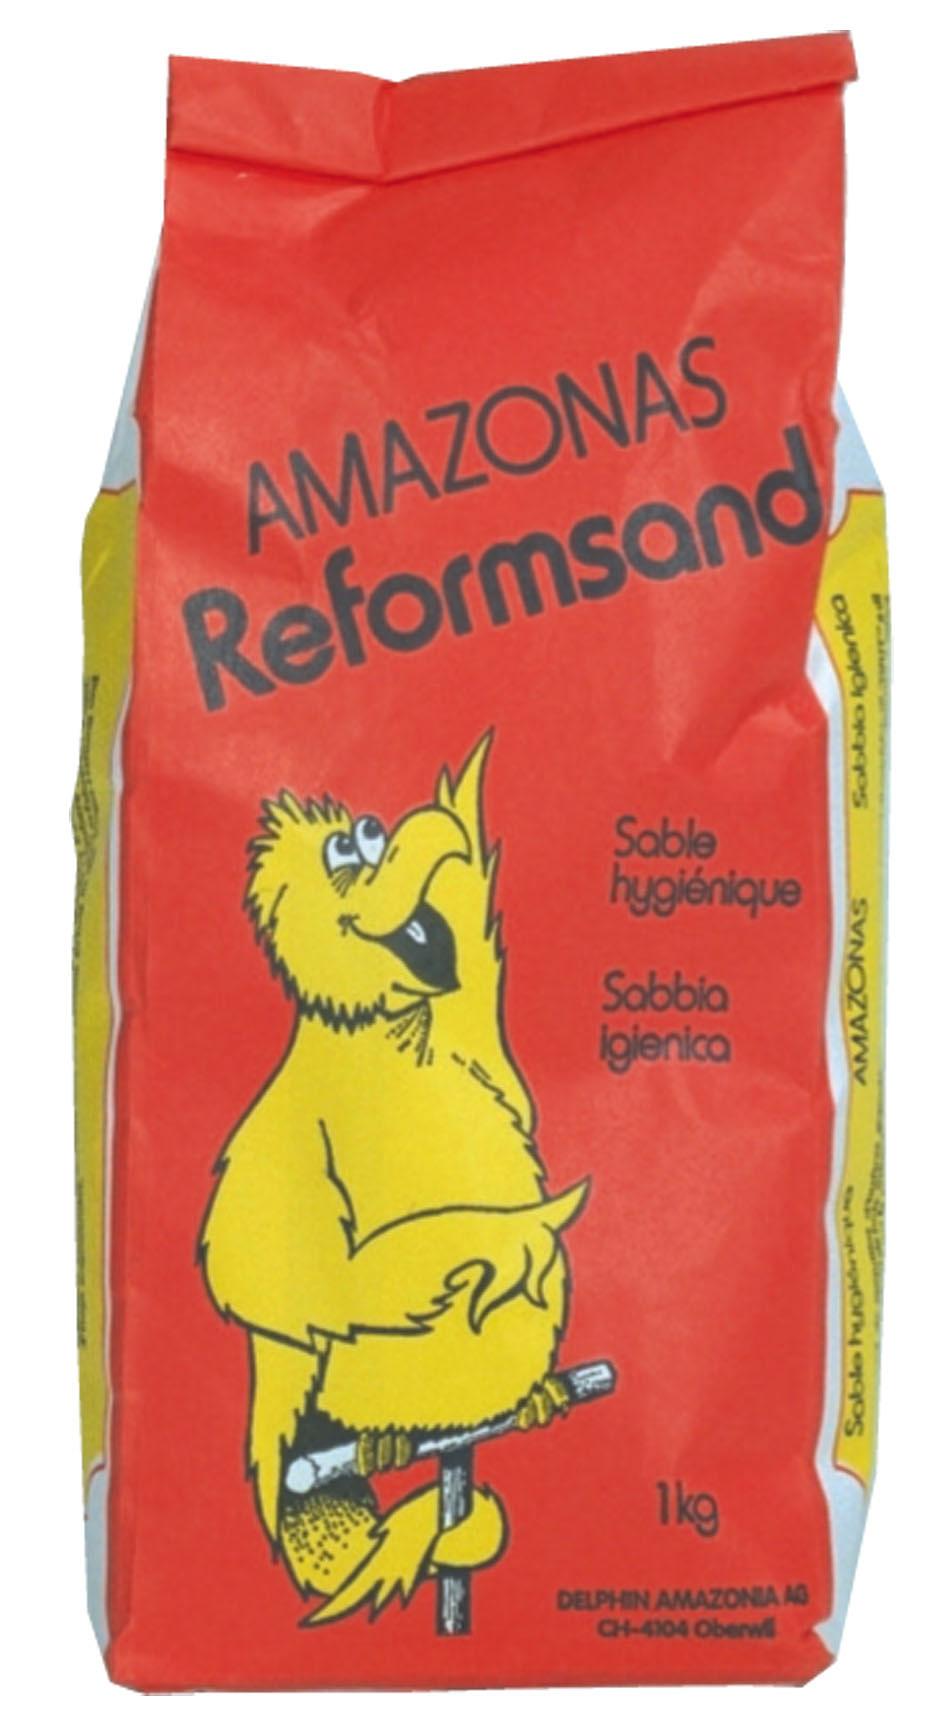 Amazonas Reformsand